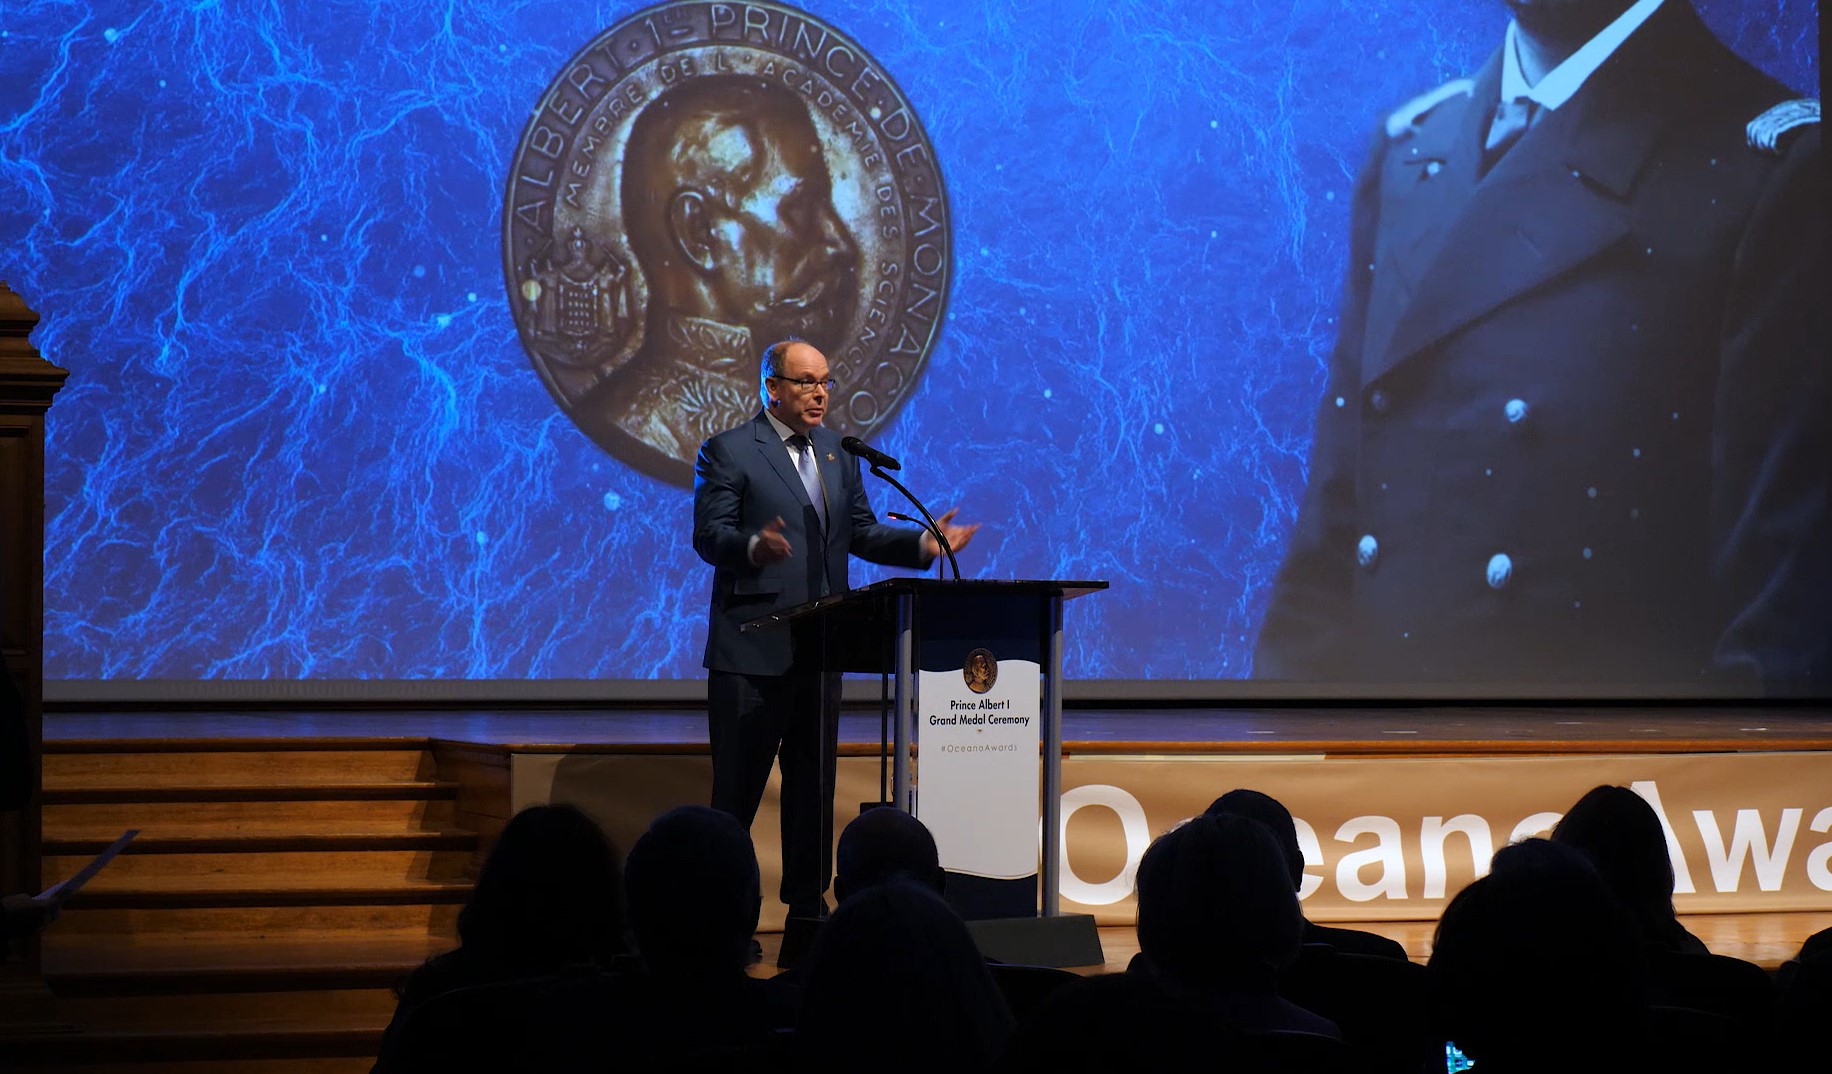 Discours de S.A.S. le Prince Albert II de Monaco lors de la remise des Grandes Médailles et Prix de Thèse 2019